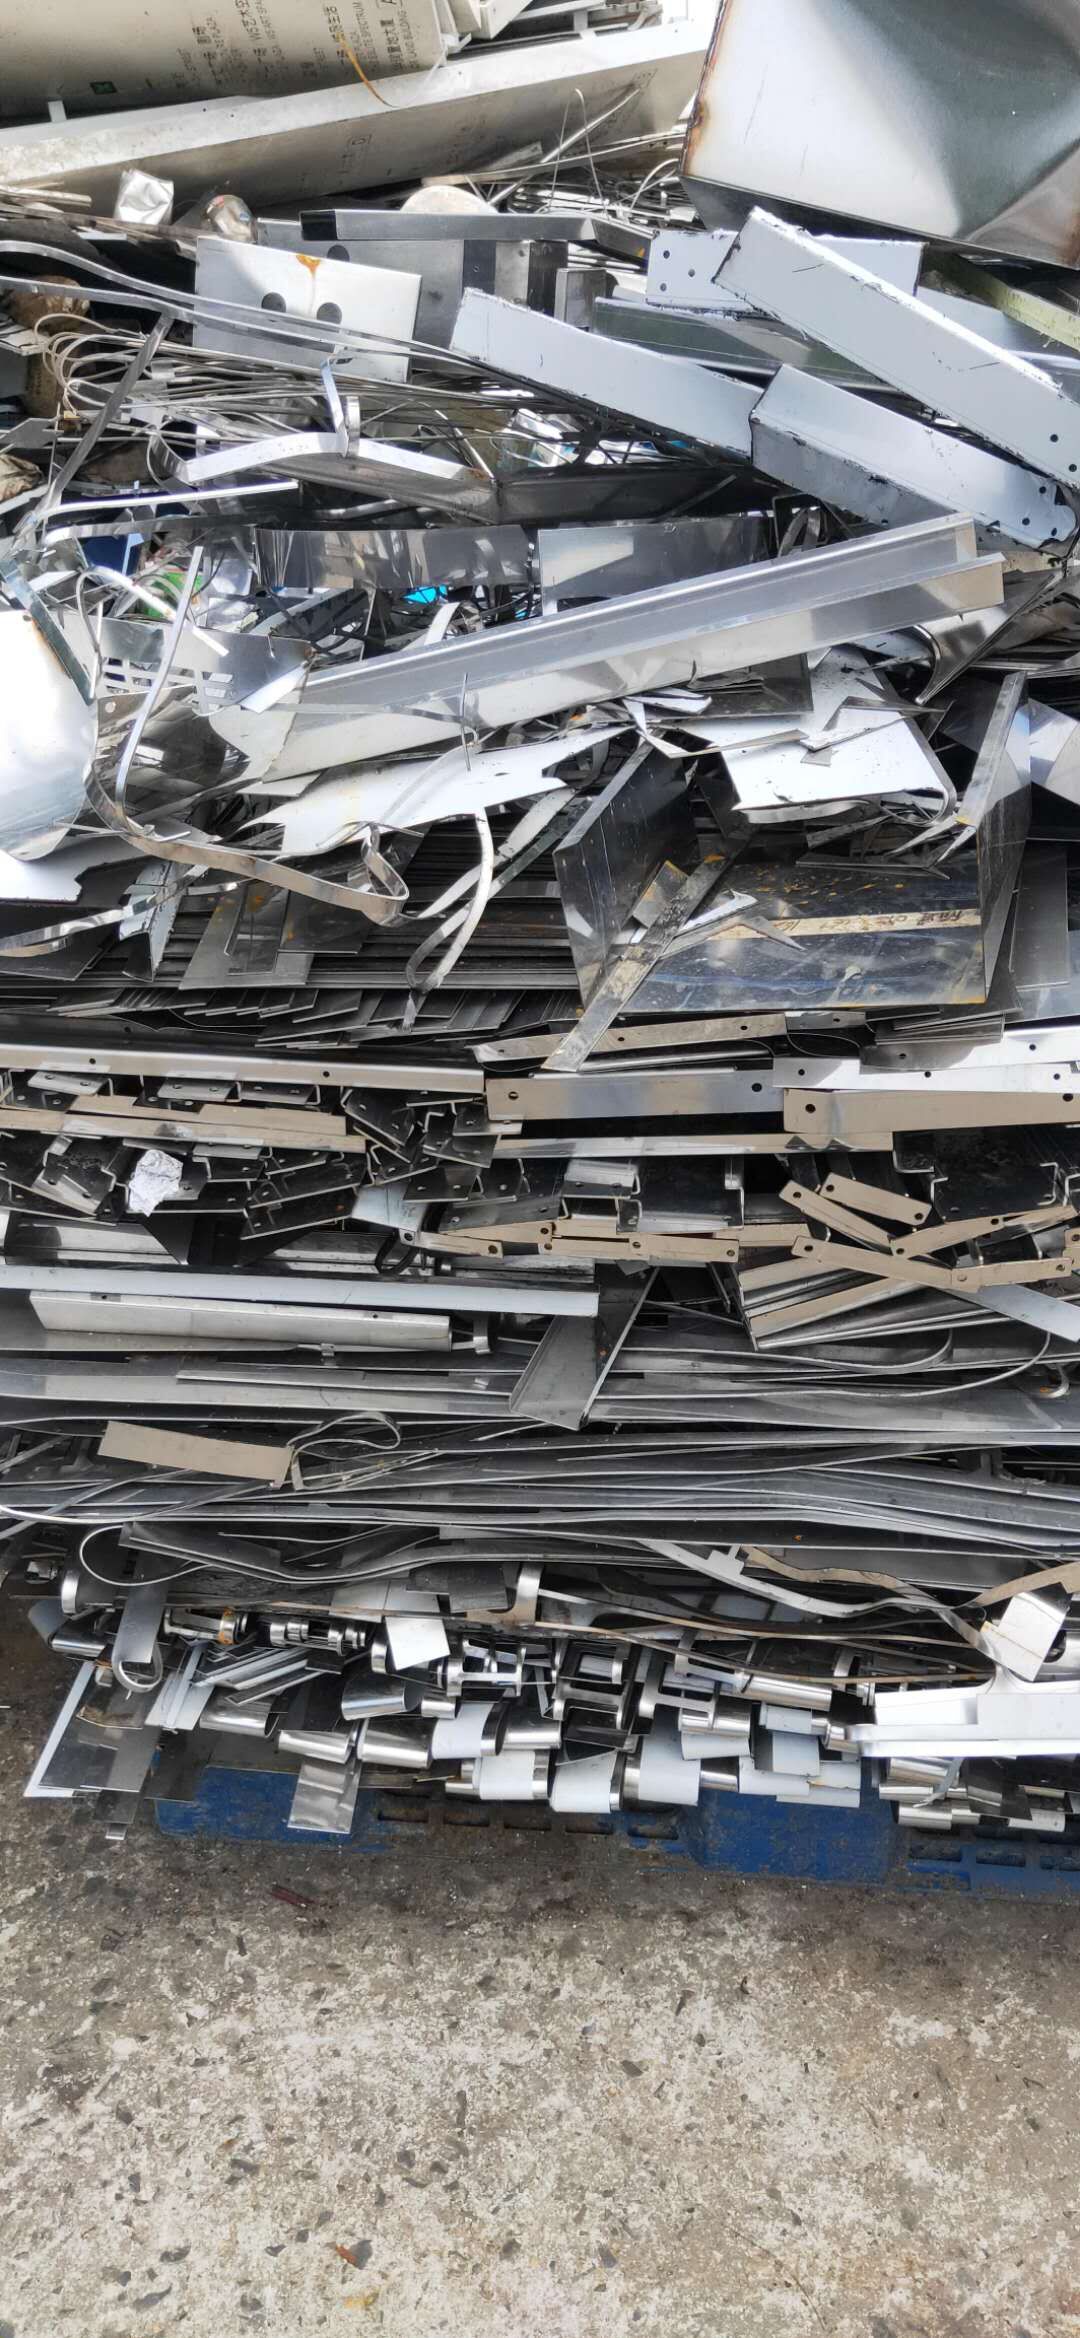 惠阳区大型废旧物资回收挑拣打包公司收购废金属电子料